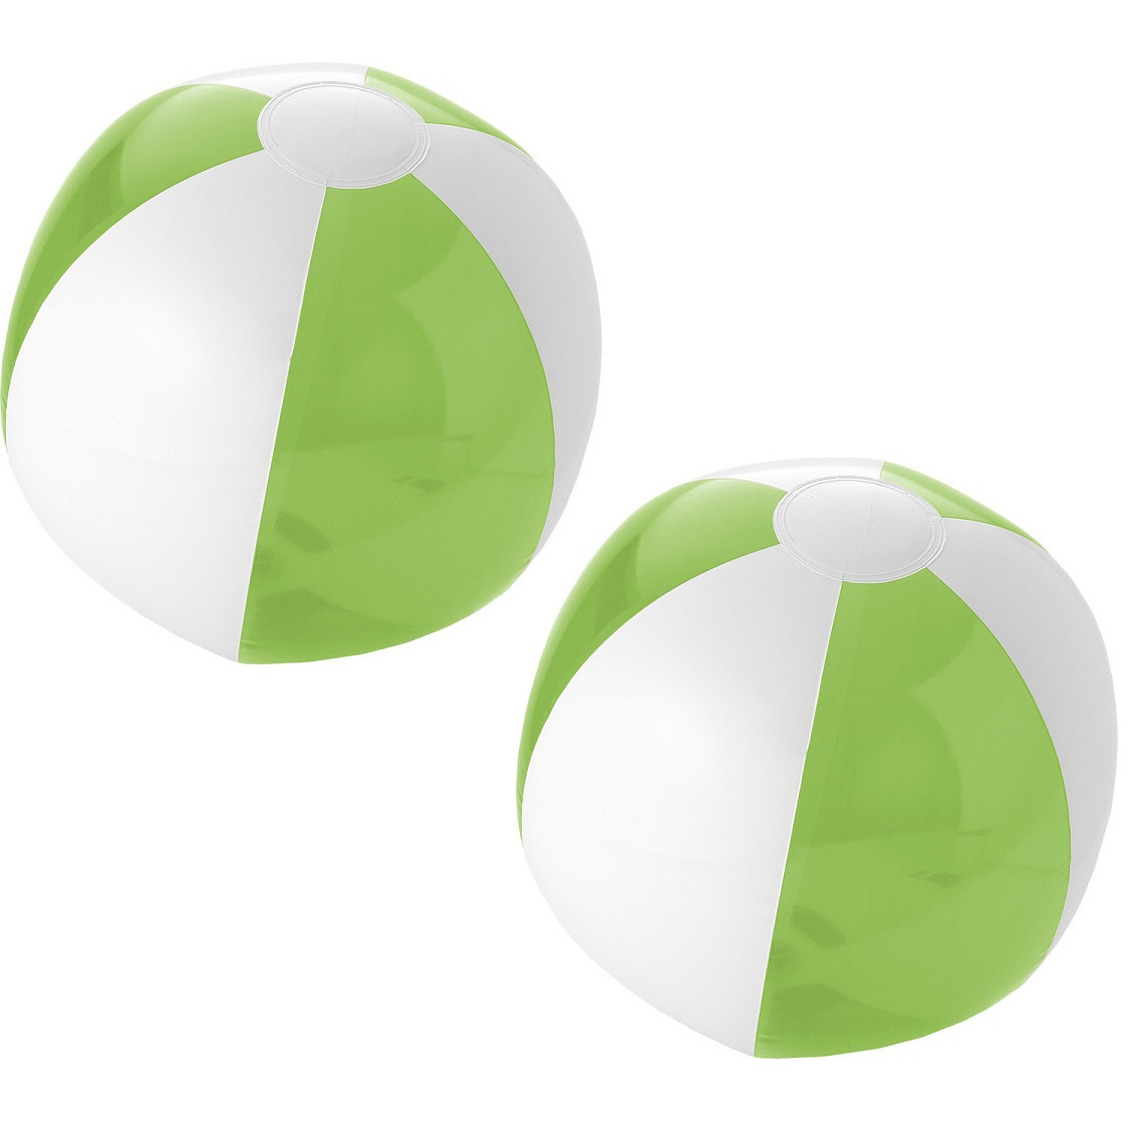 10x stuks opblaasbare strandballen groen/wit 30 cm -